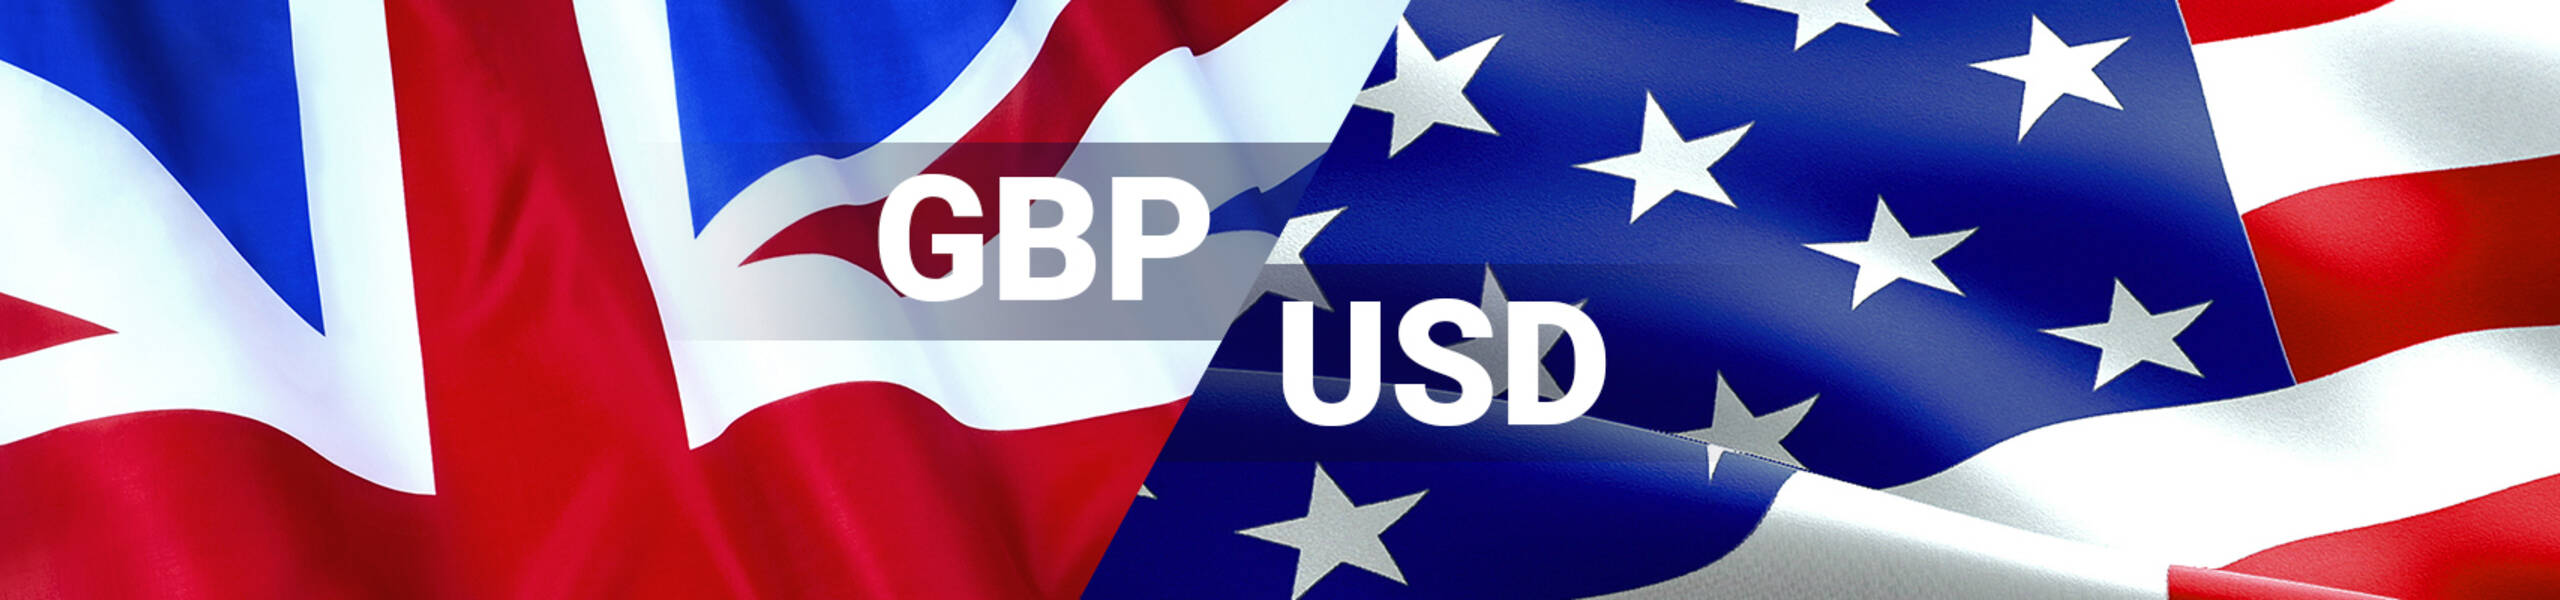 GBP/USD Previsión Semanal Octubre 1 al 5.